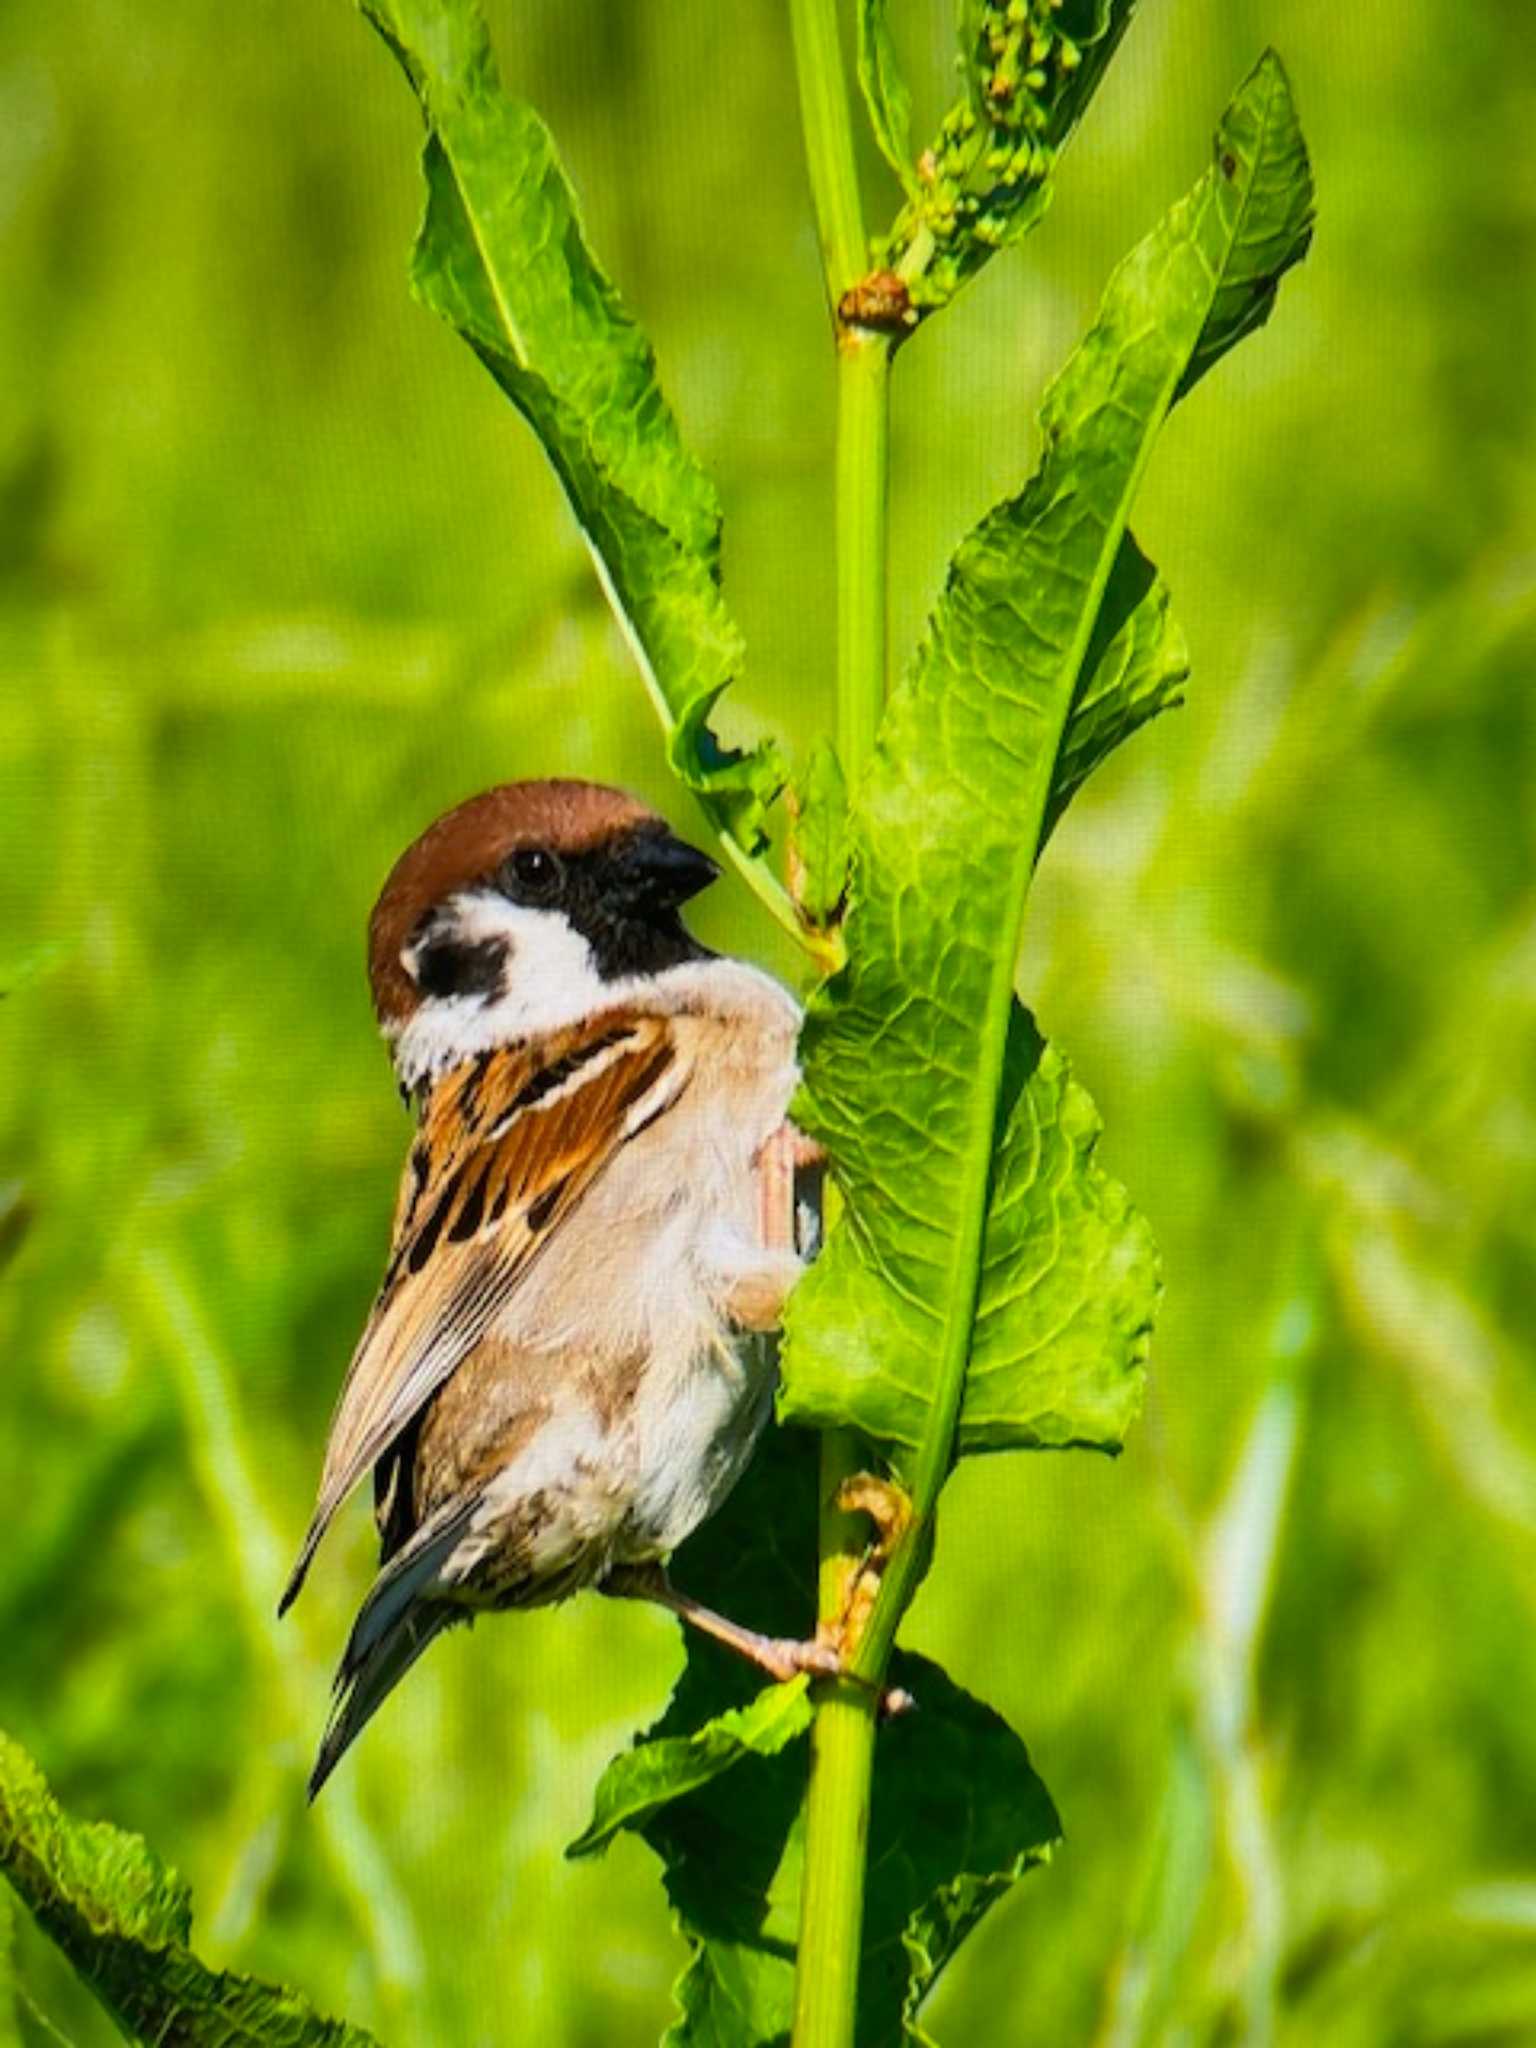 Photo of Eurasian Tree Sparrow at 上谷沼調整池 by ゆるゆるとりみんgoo